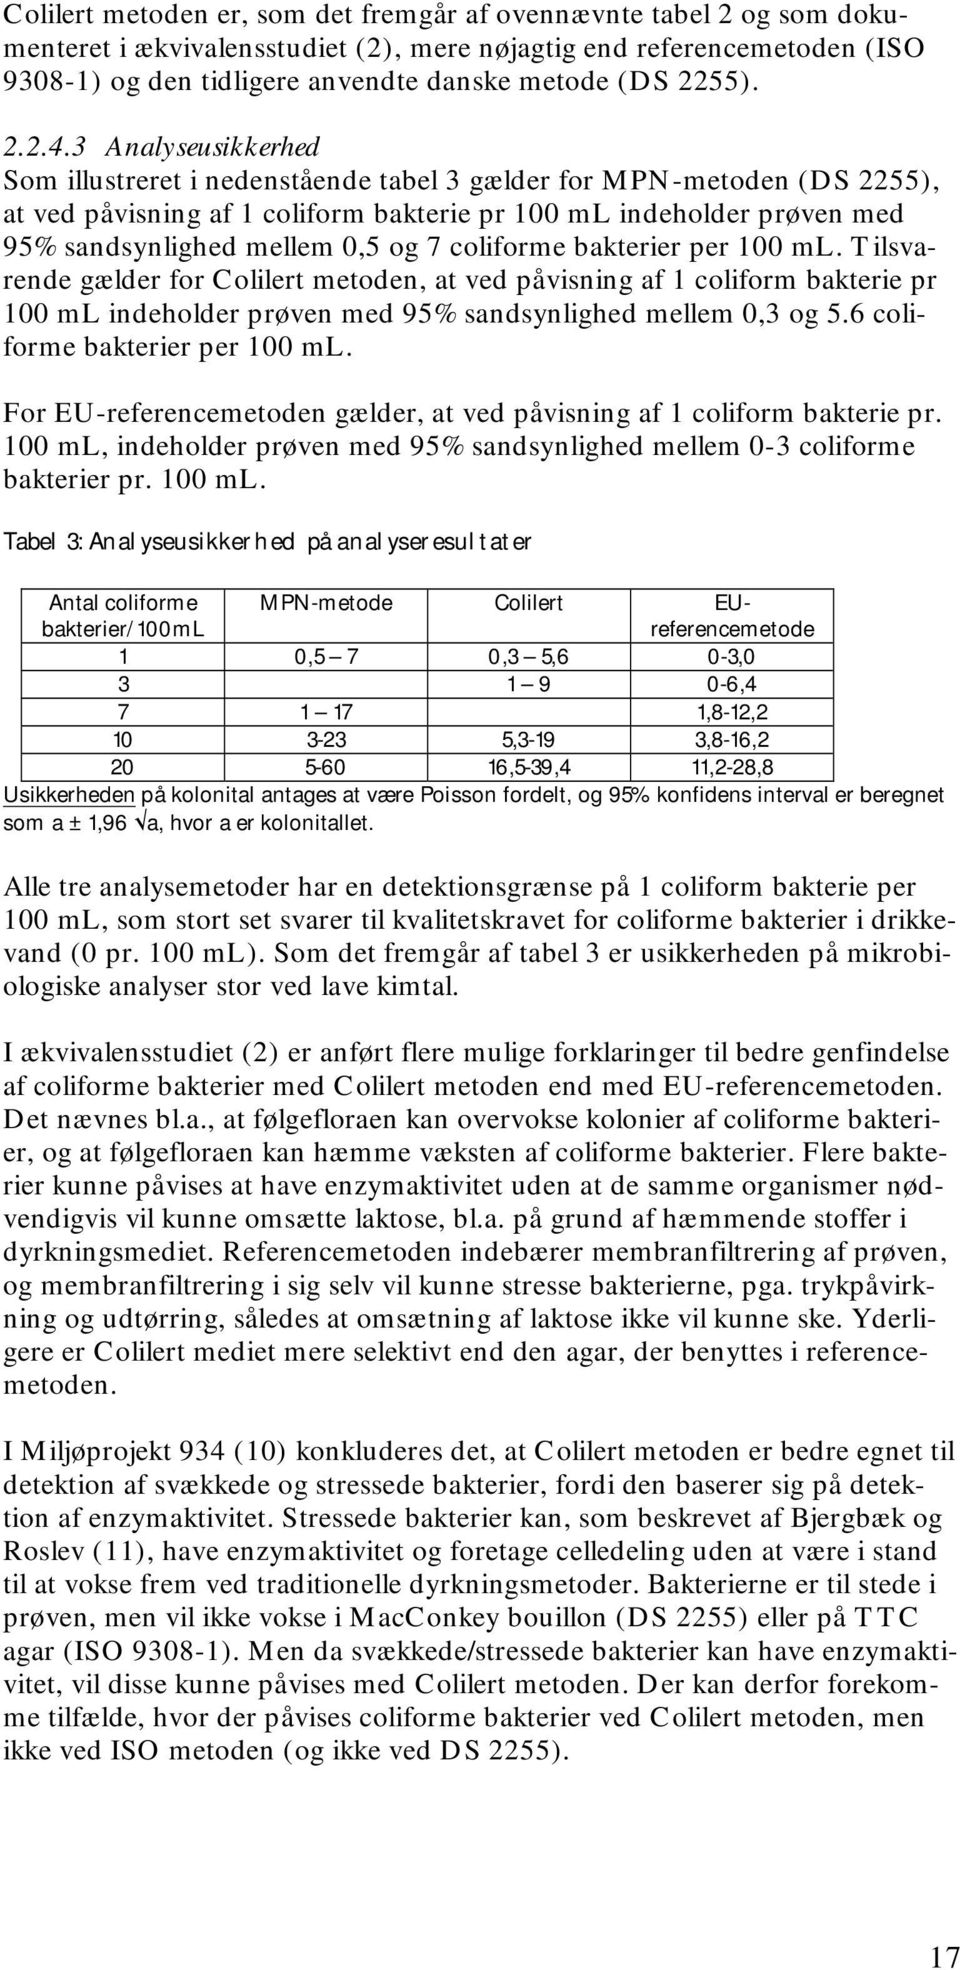 3 Analyseusikkerhed Som illustreret i nedenstående tabel 3 gælder for MPN-metoden (DS 2255), at ved påvisning af 1 coliform bakterie pr 100 ml indeholder prøven med 95% sandsynlighed mellem 0,5 og 7